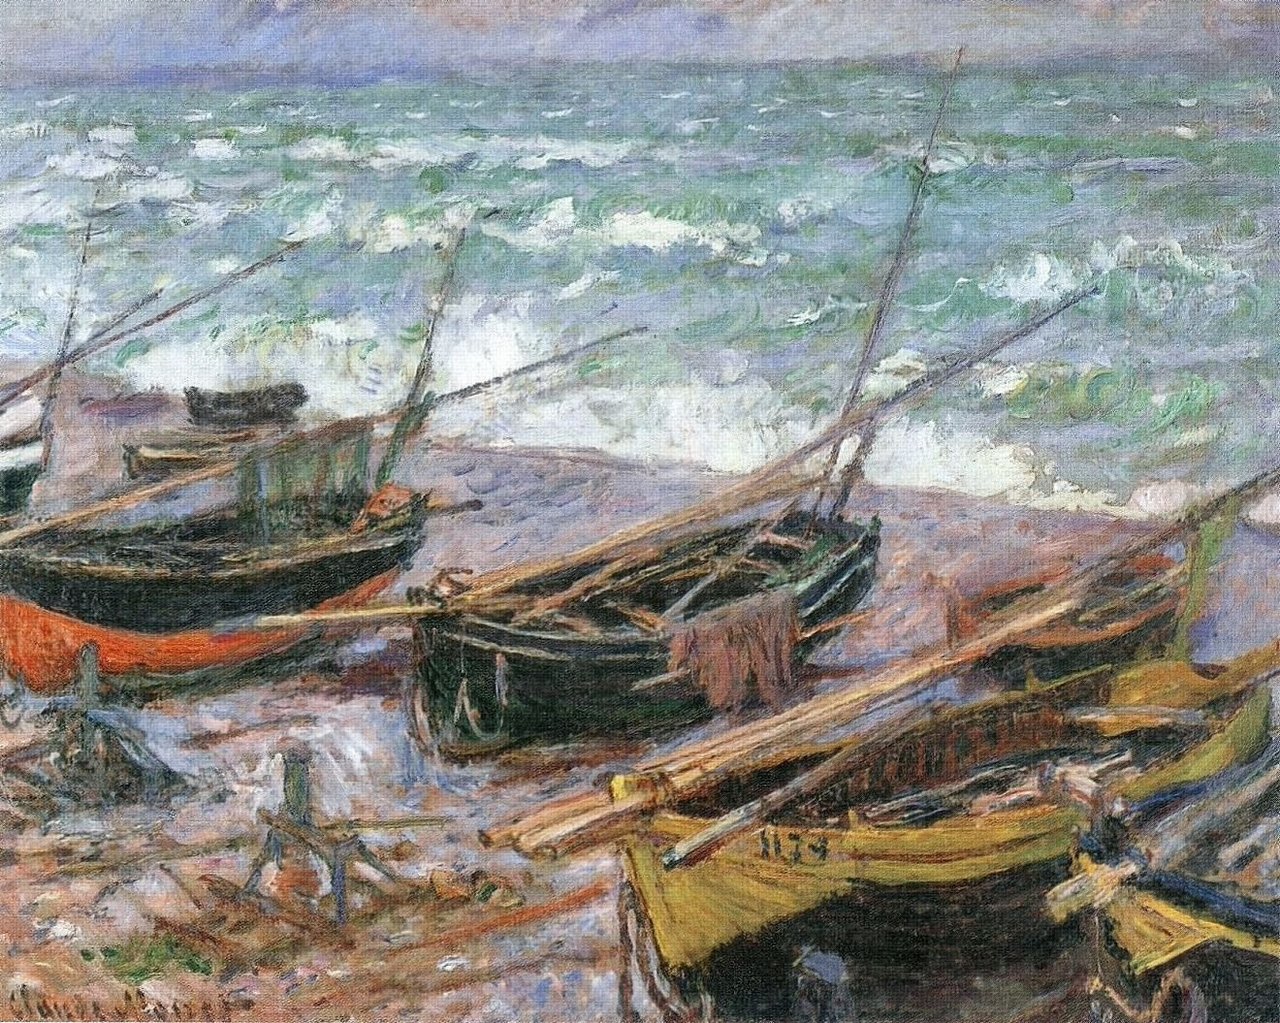 Three Fishing Boats by Claude Monet - 1886 - 73 x 92.5 cm Szépművészeti Múzeum